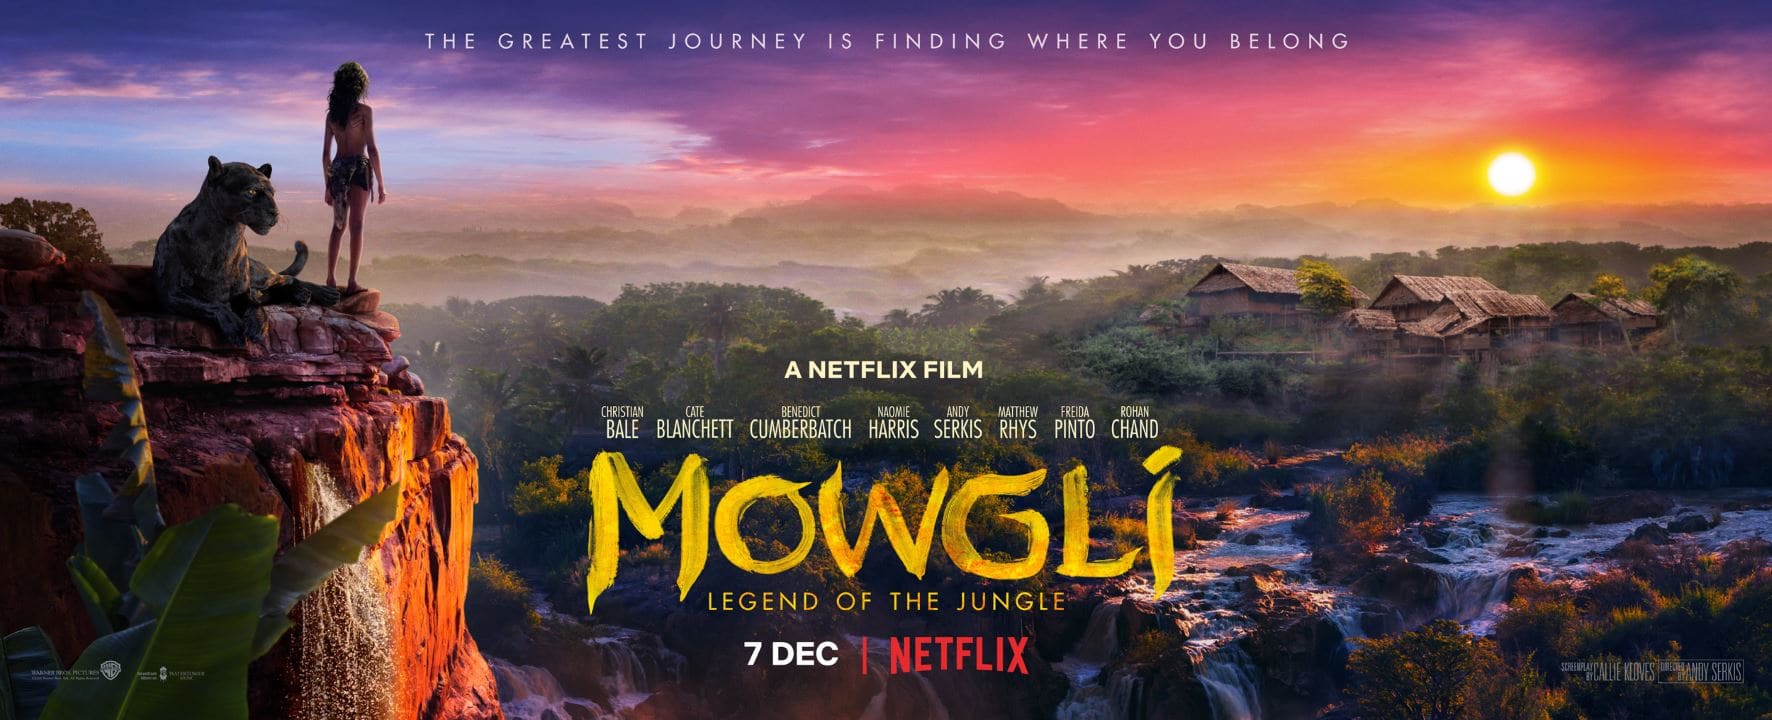 Mowgli: Legend of the Jungle Official Trailer Netflix